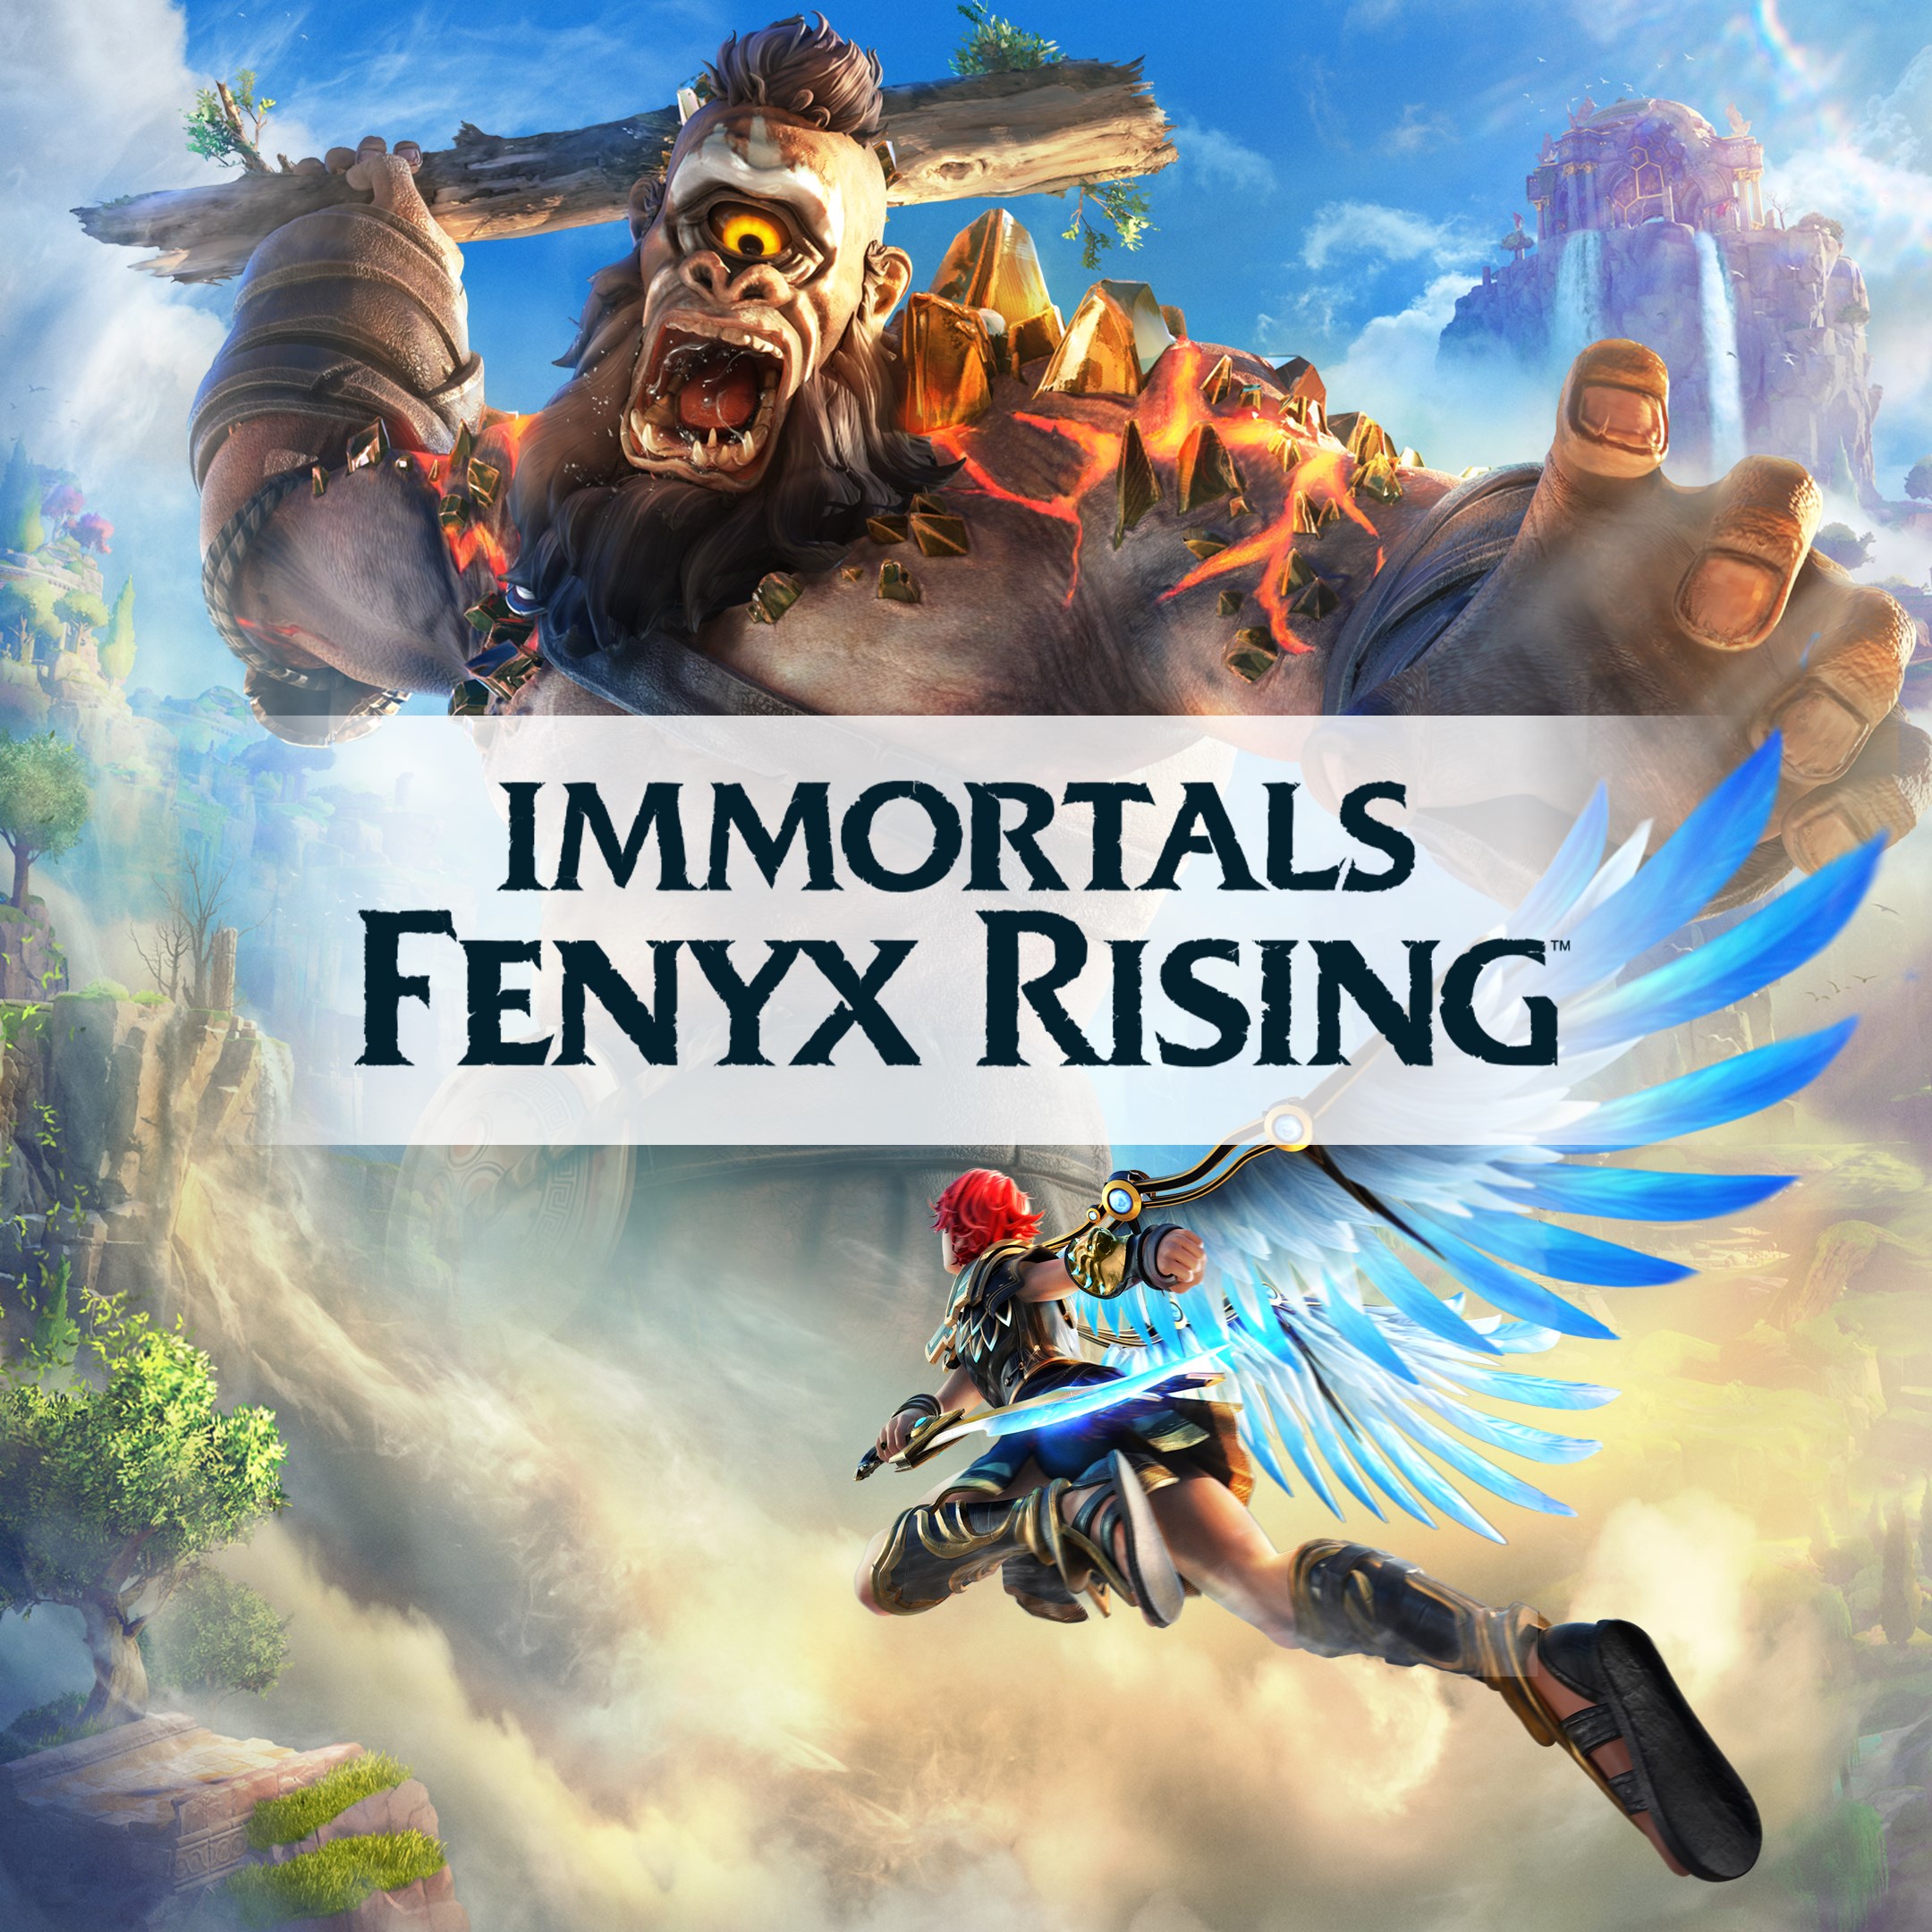 Феникс райзинг. Immortal Fenix Rising. Игра Immortals Fenix Rising. Игра Immortals Fenyx Rising (ps5). Immortals Fenix Rising ps5.